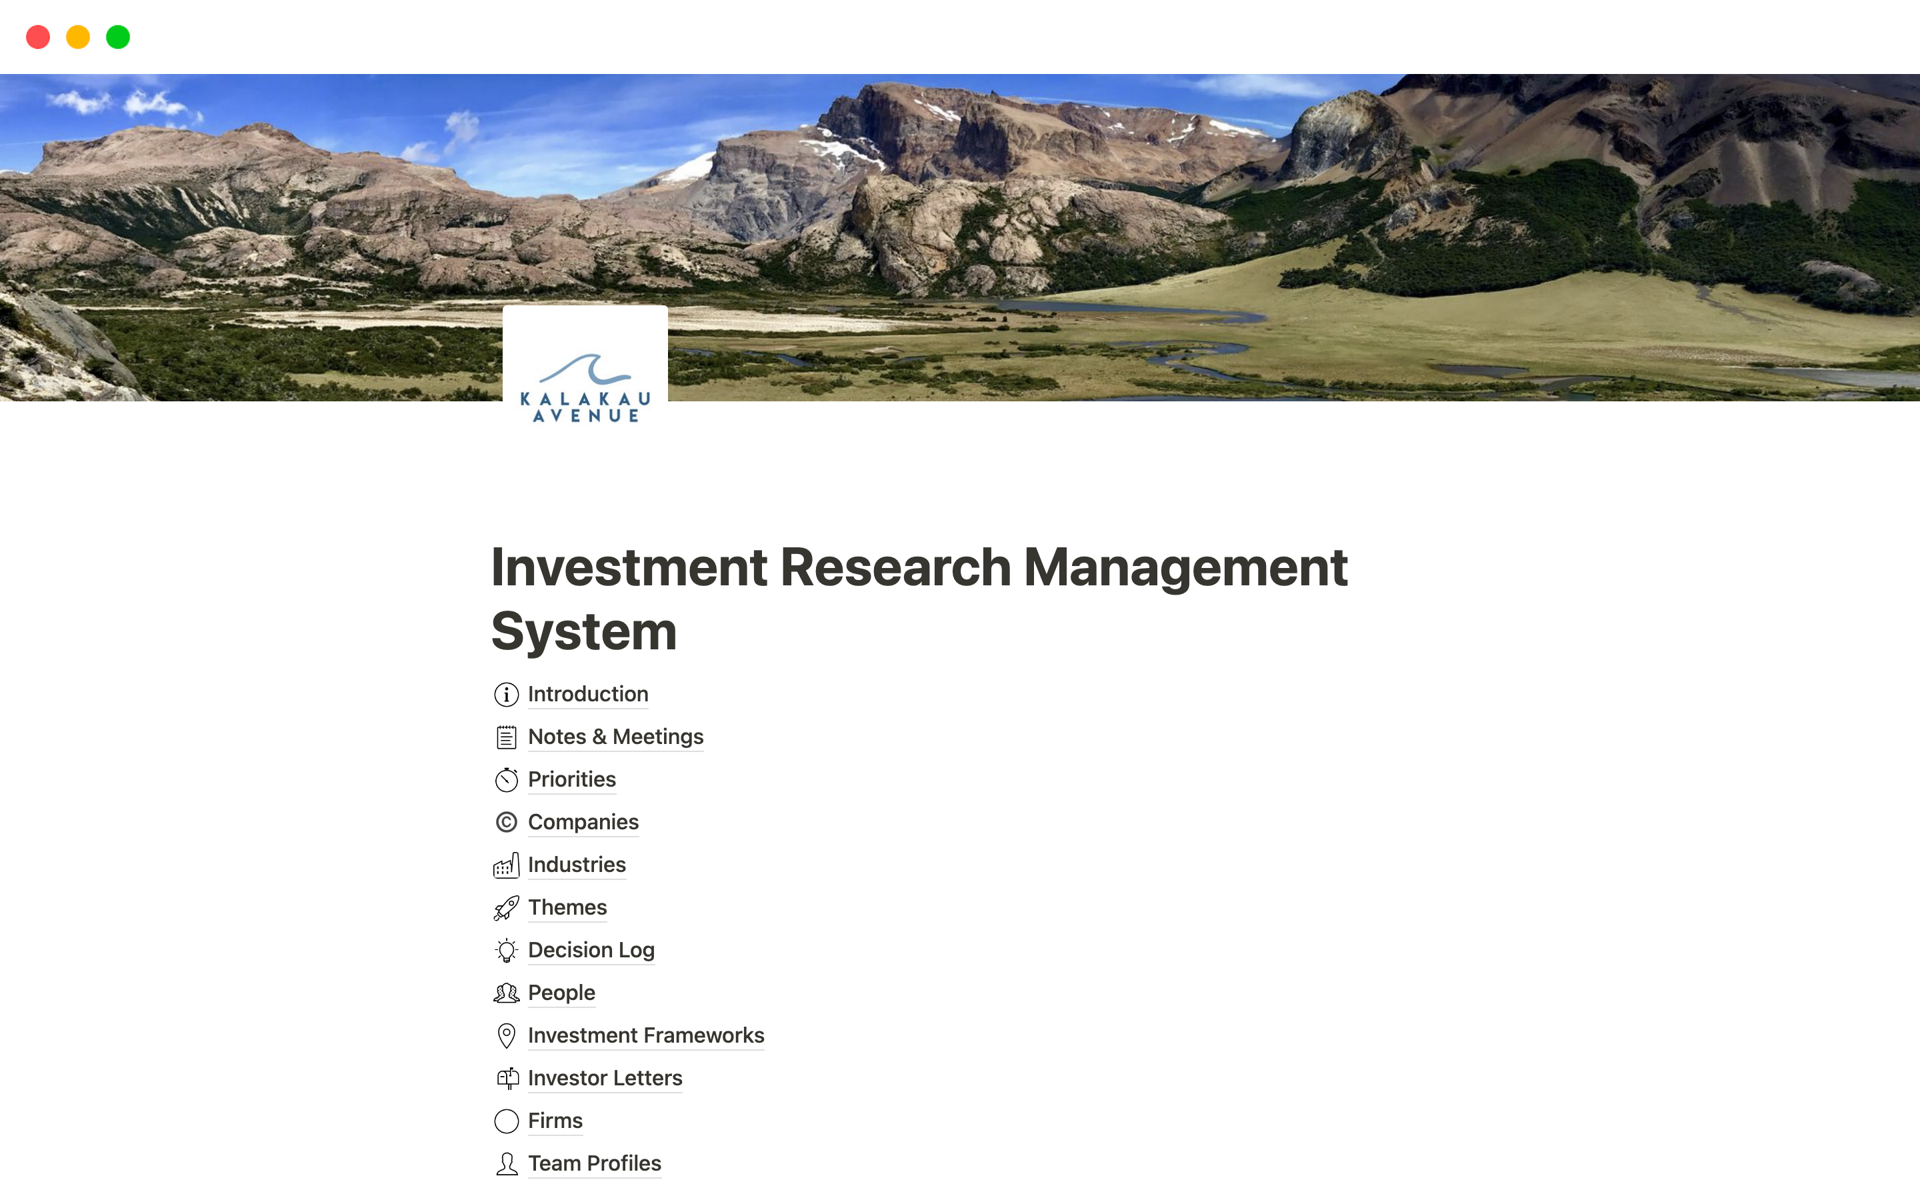 Vista previa de una plantilla para Investment Research Management System